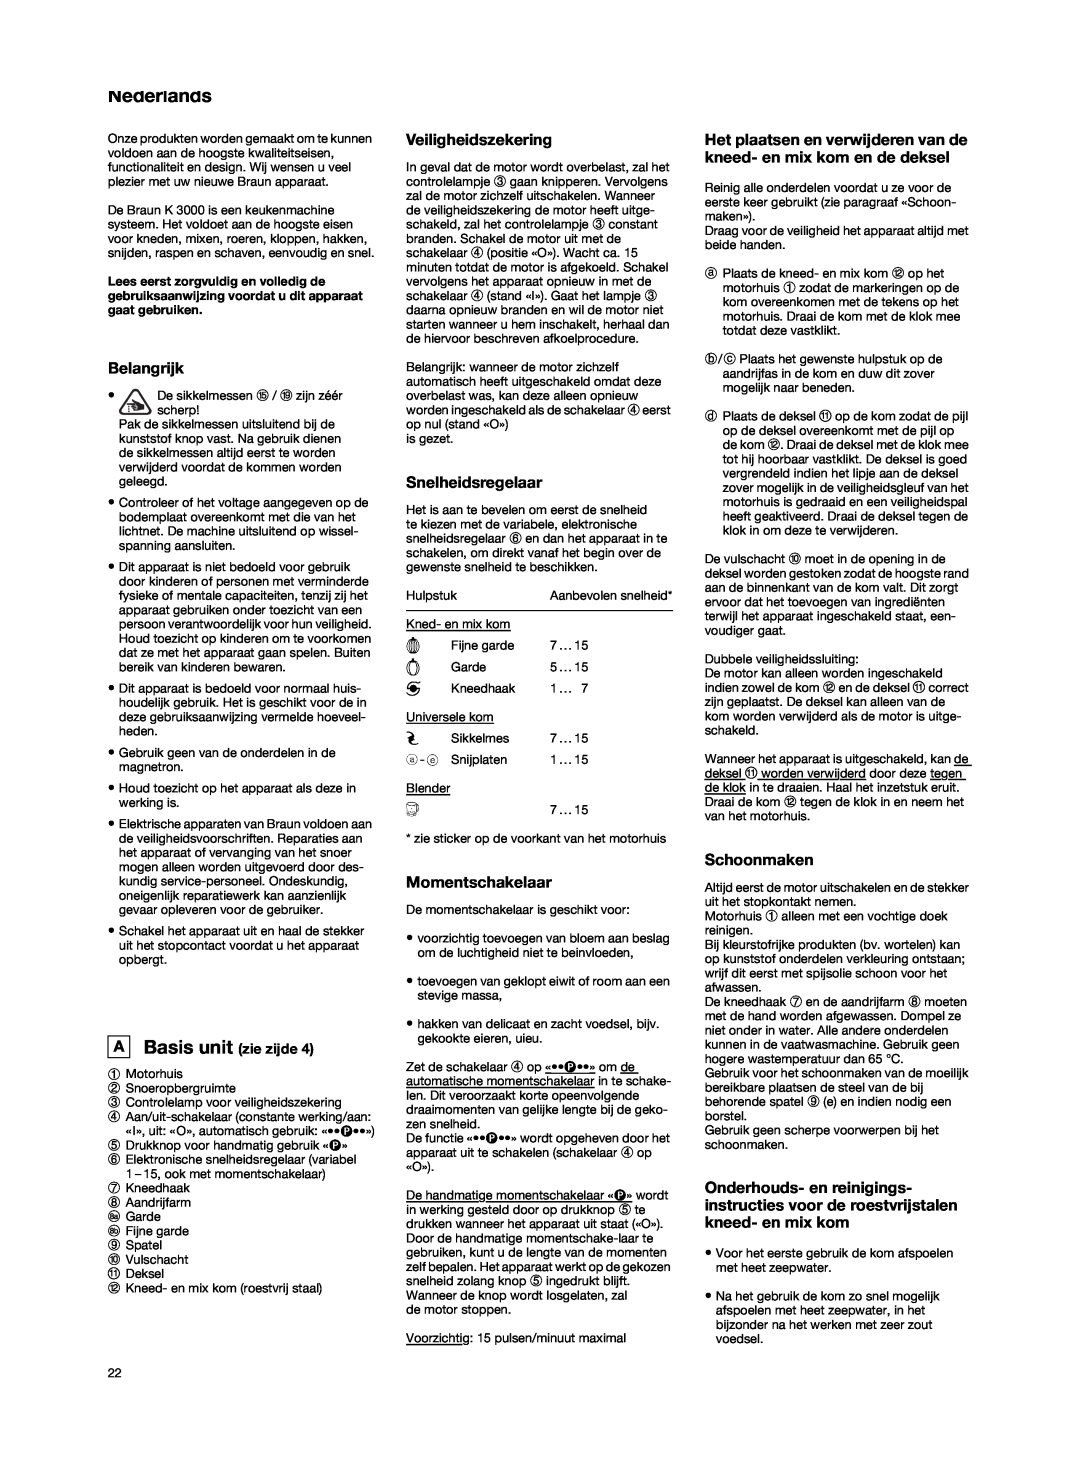 Braun K3000 manual Nederlands, Belangrijk, Veiligheidszekering, Snelheidsregelaar, Momentschakelaar, Schoonmaken 